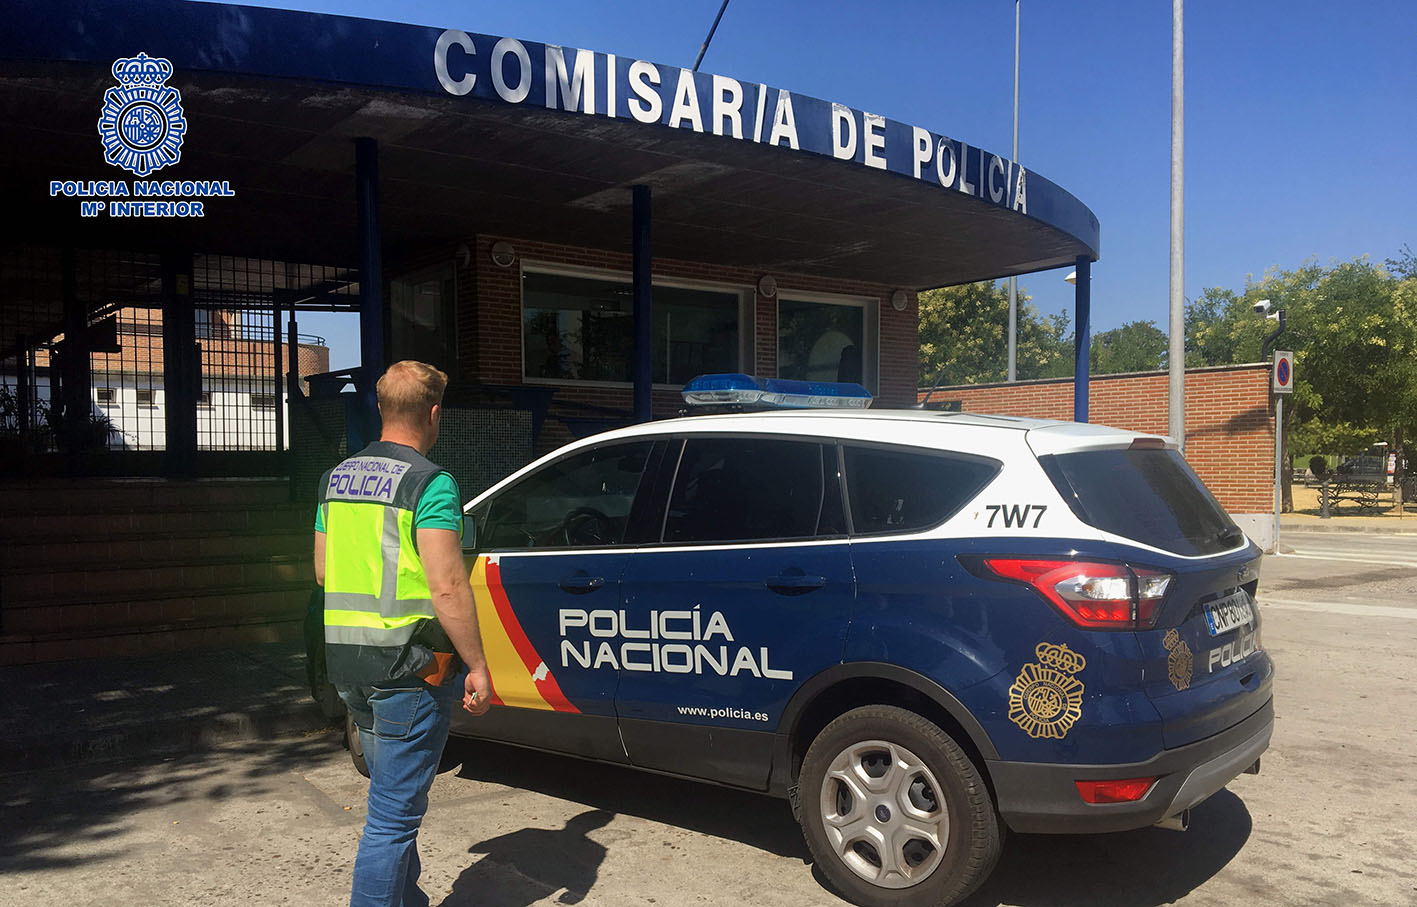 La operación se inició en la Comisaría de la Policía Nacional de Talavera por la conexión del grupo con el tráfico de drogas.